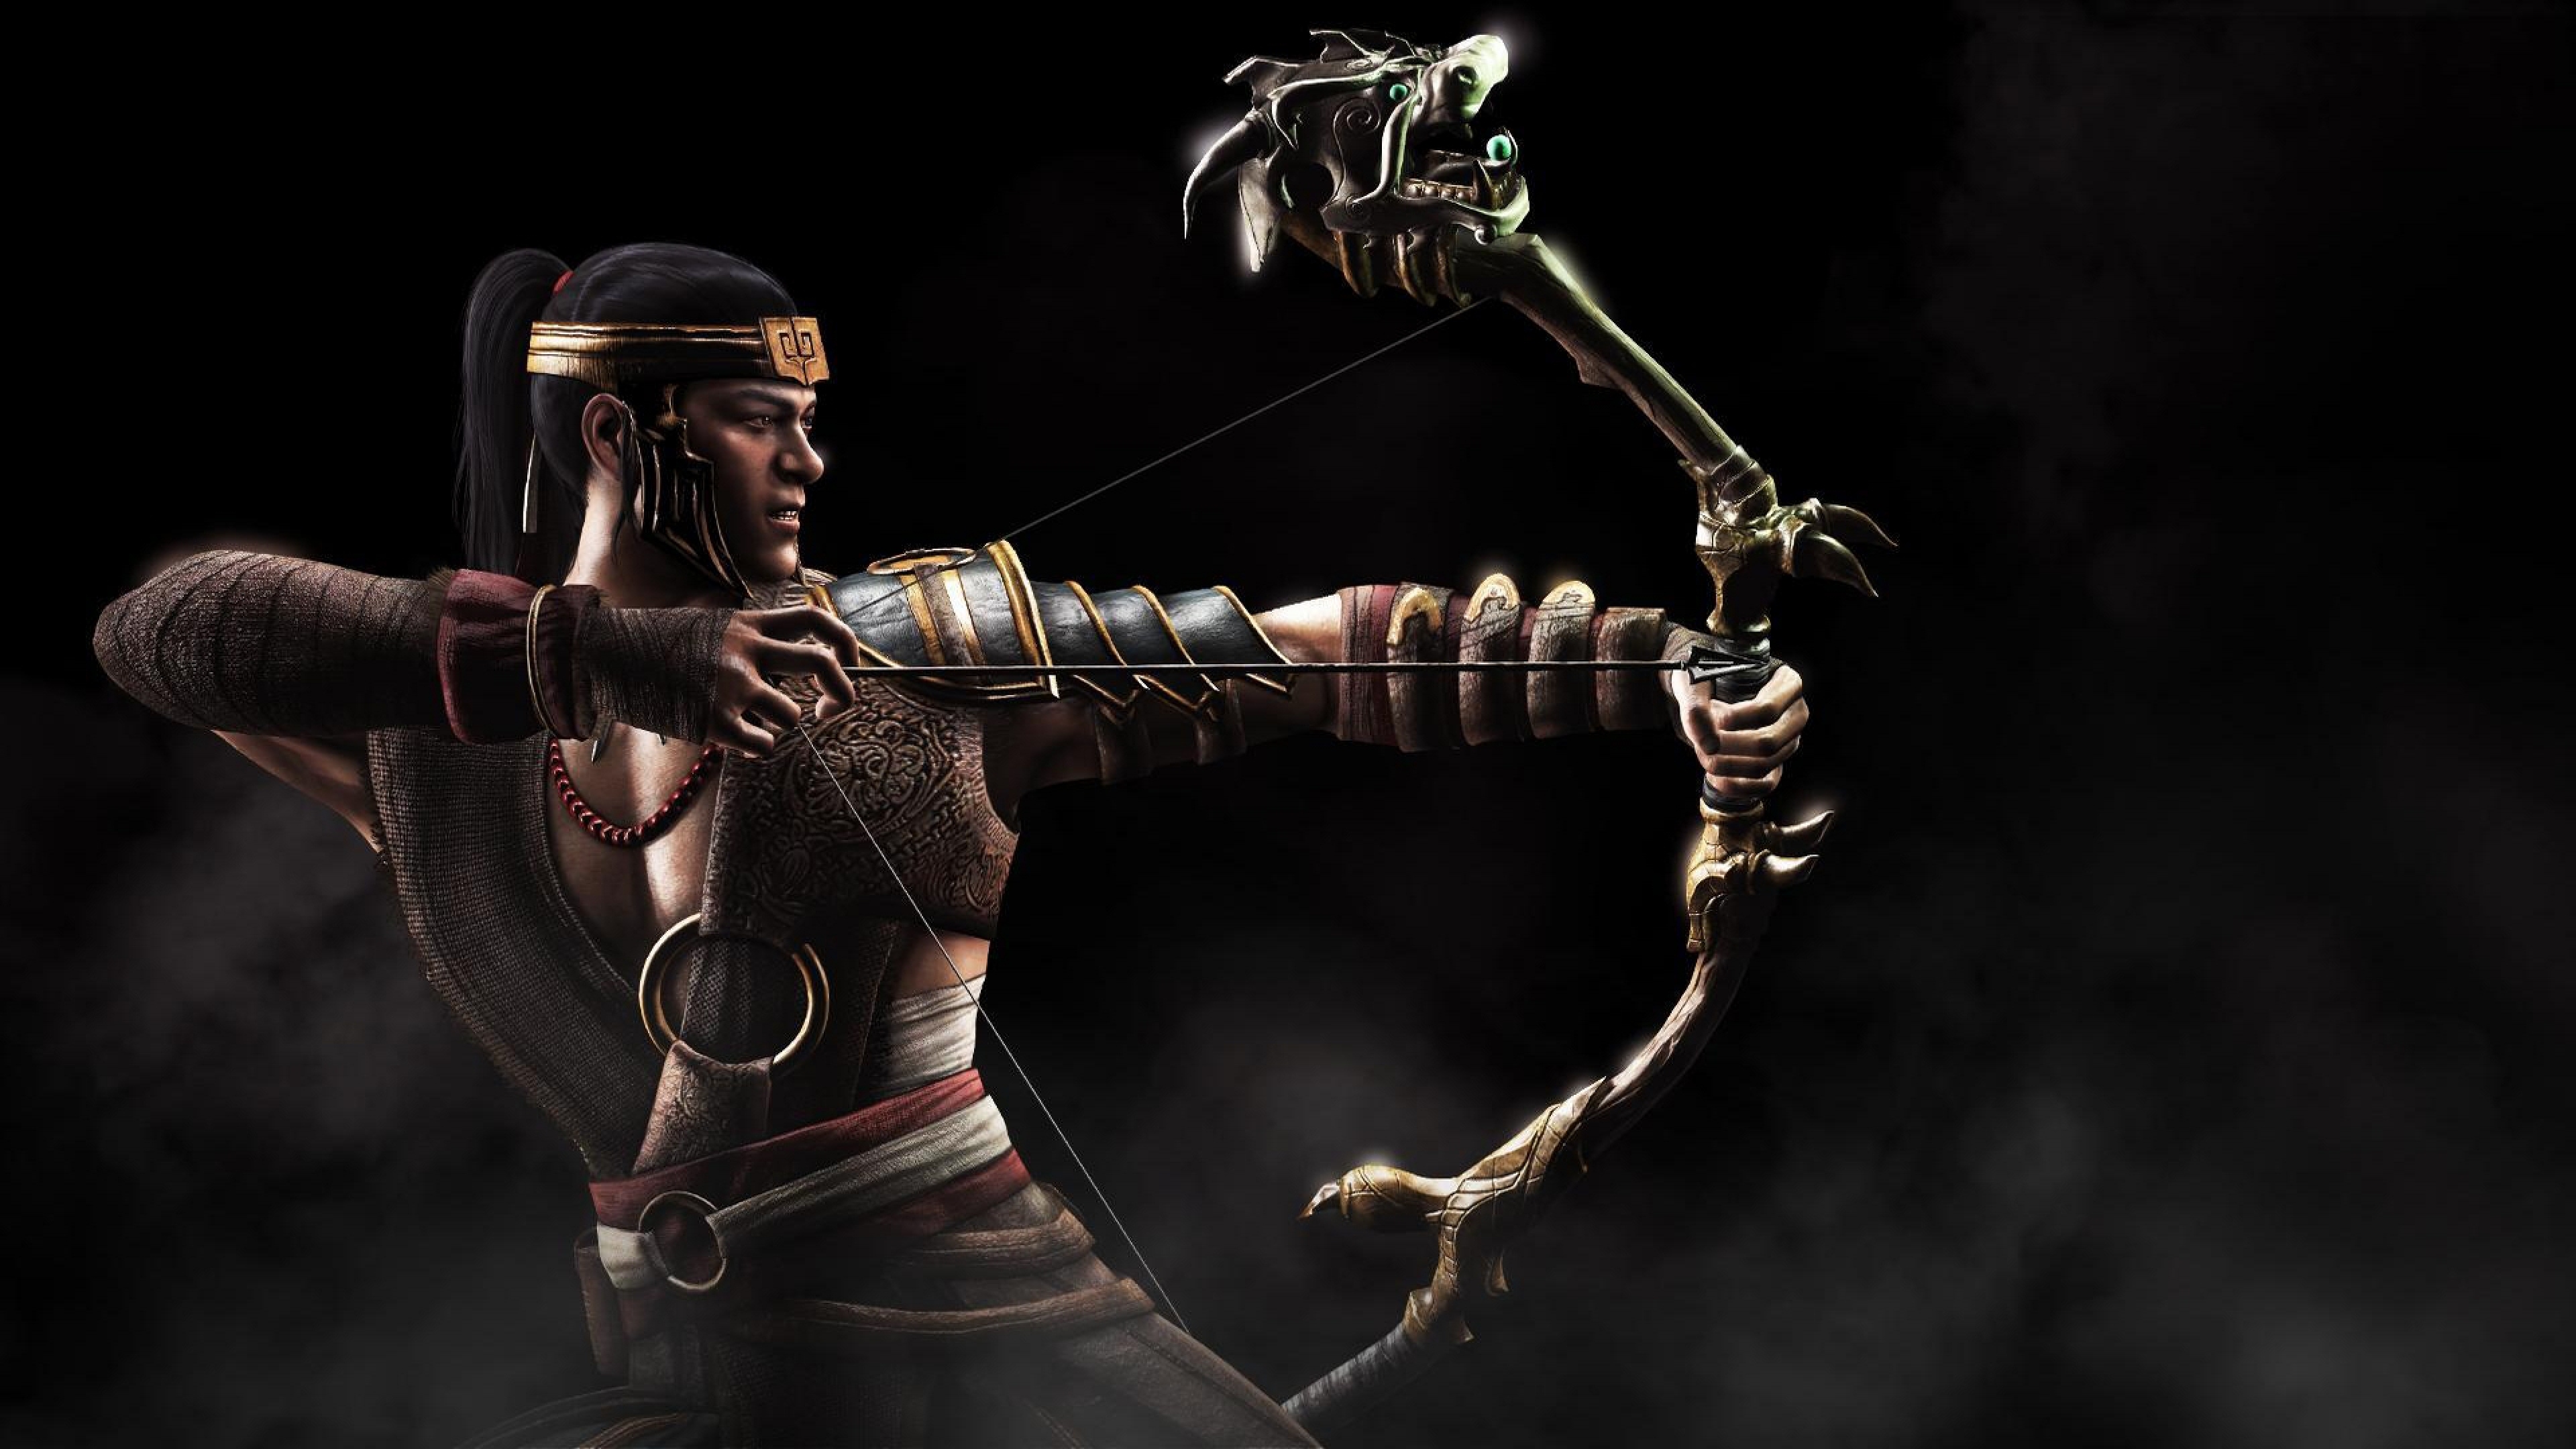 Mortal Kombat X Earthly Kingdom Wallpaper Background 4k Ultra HD